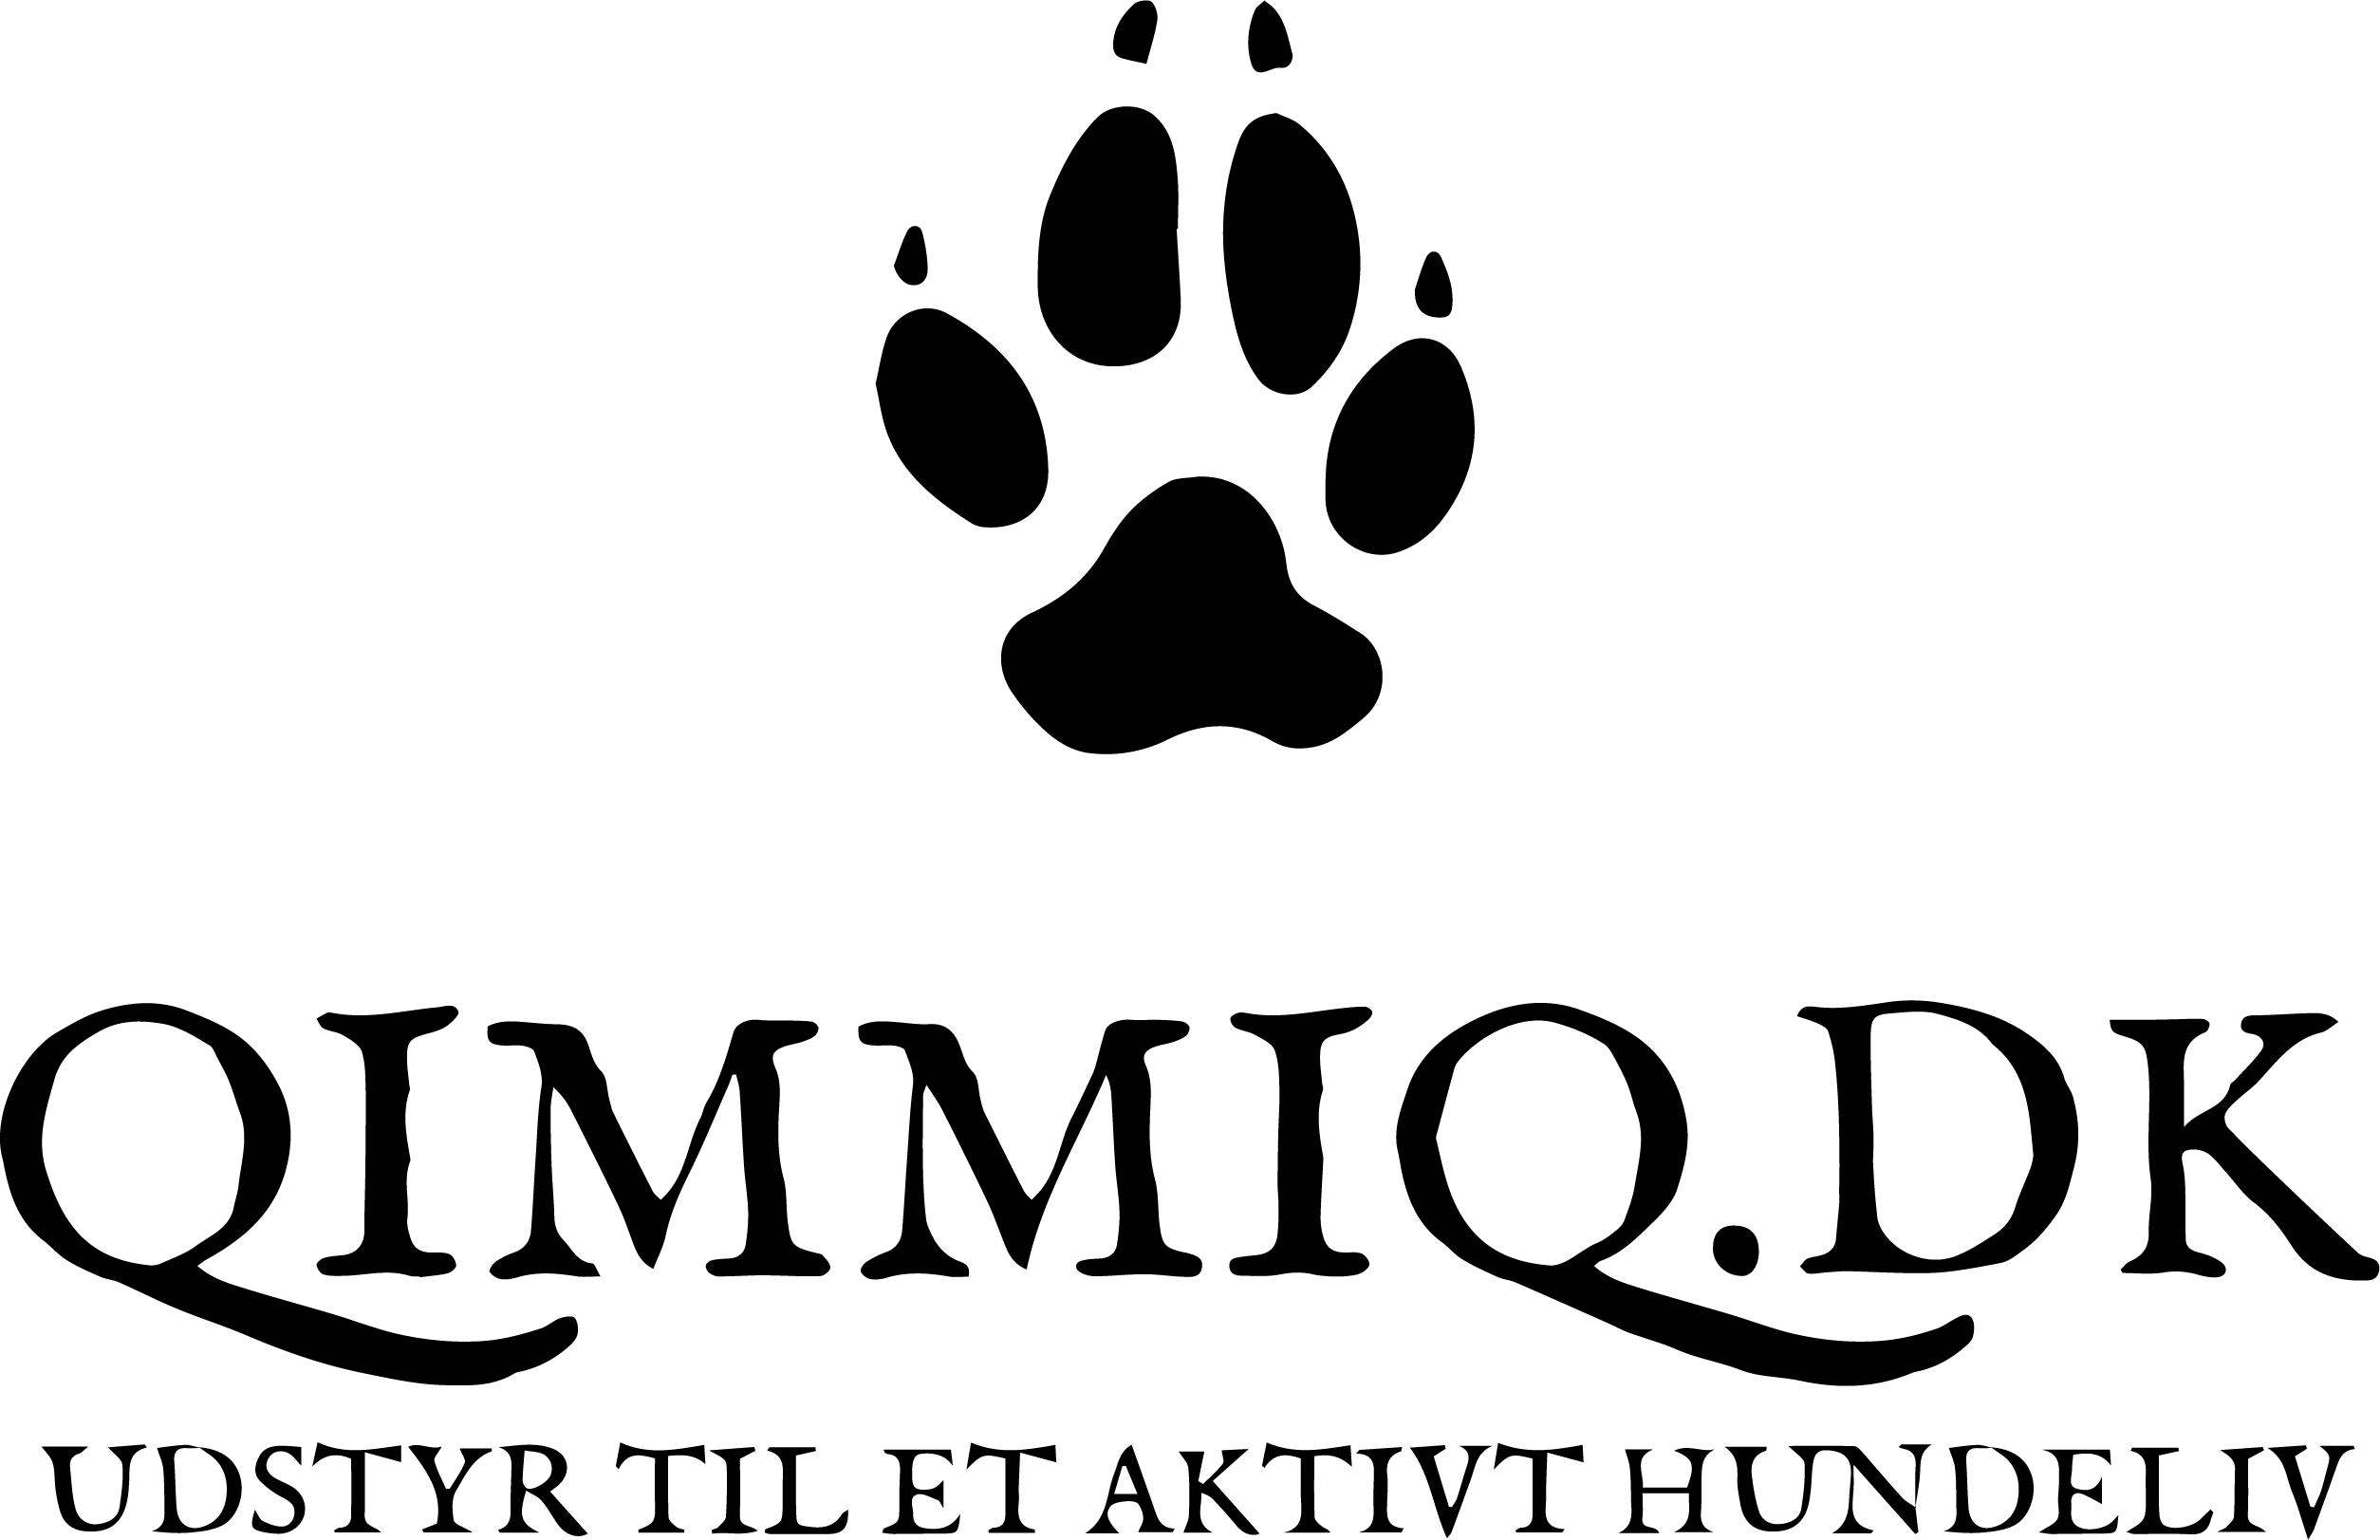 Qimmiq.dk